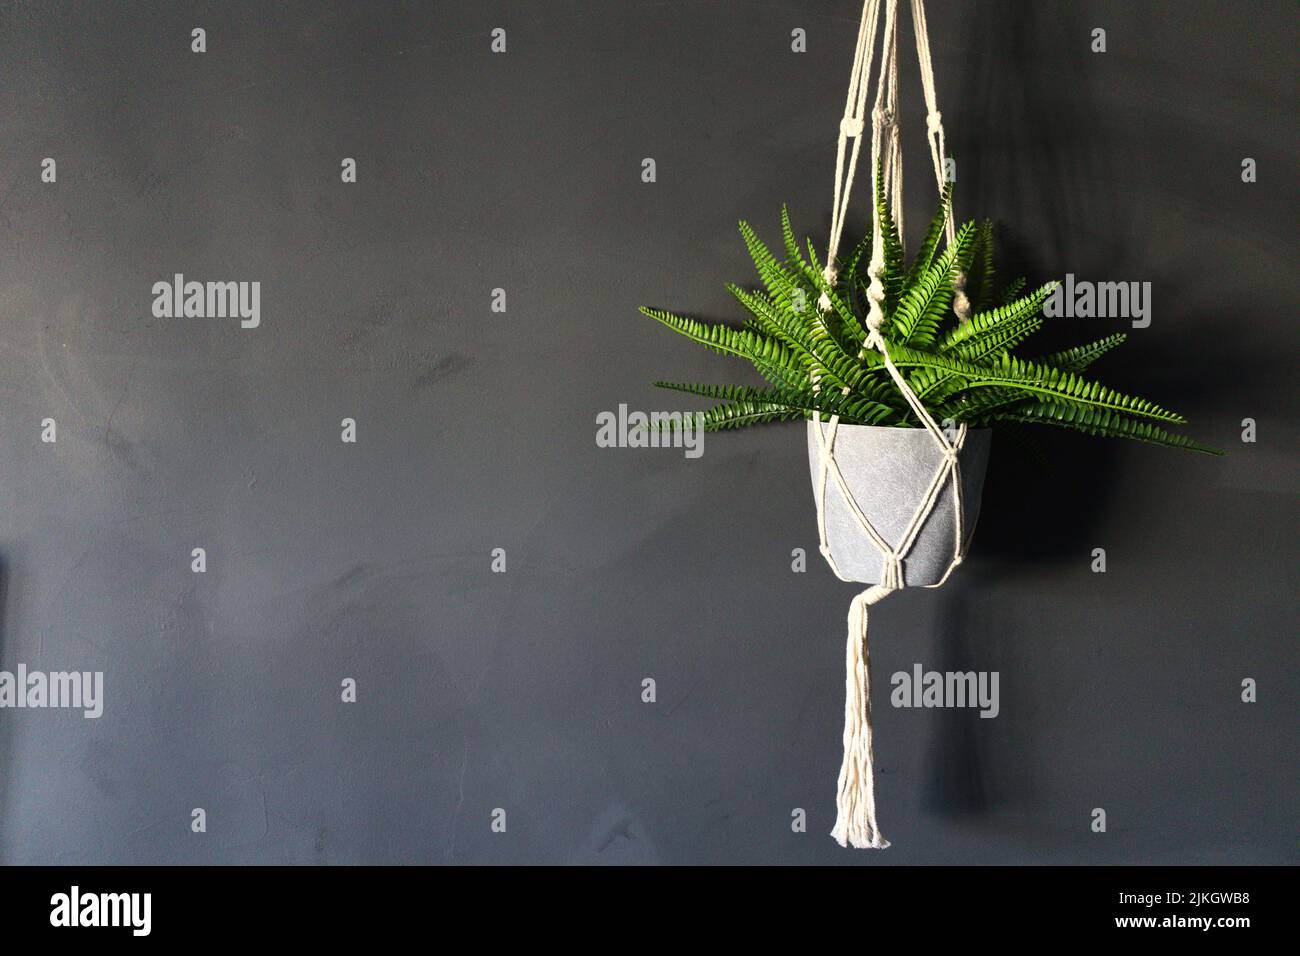 Una maceta verde que cuelga planta adentro contra una pared oscura Foto de stock